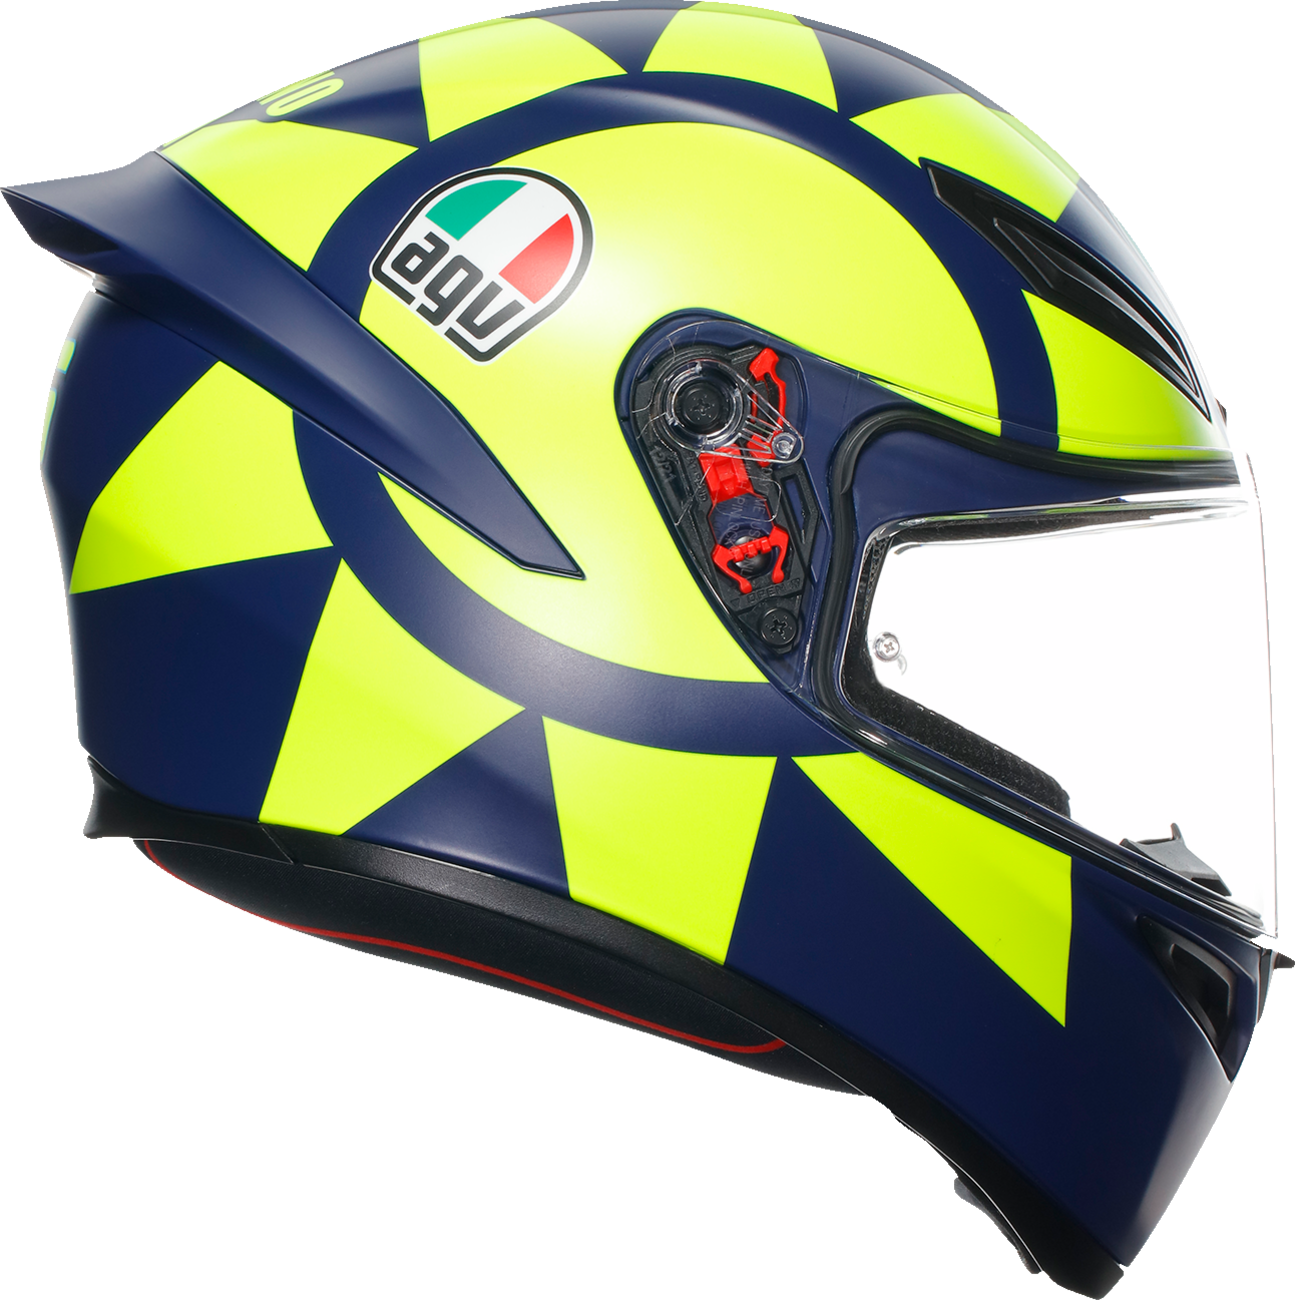 AGV K1 S Helmet - Soleluna 2018 - Medium 2118394003019M